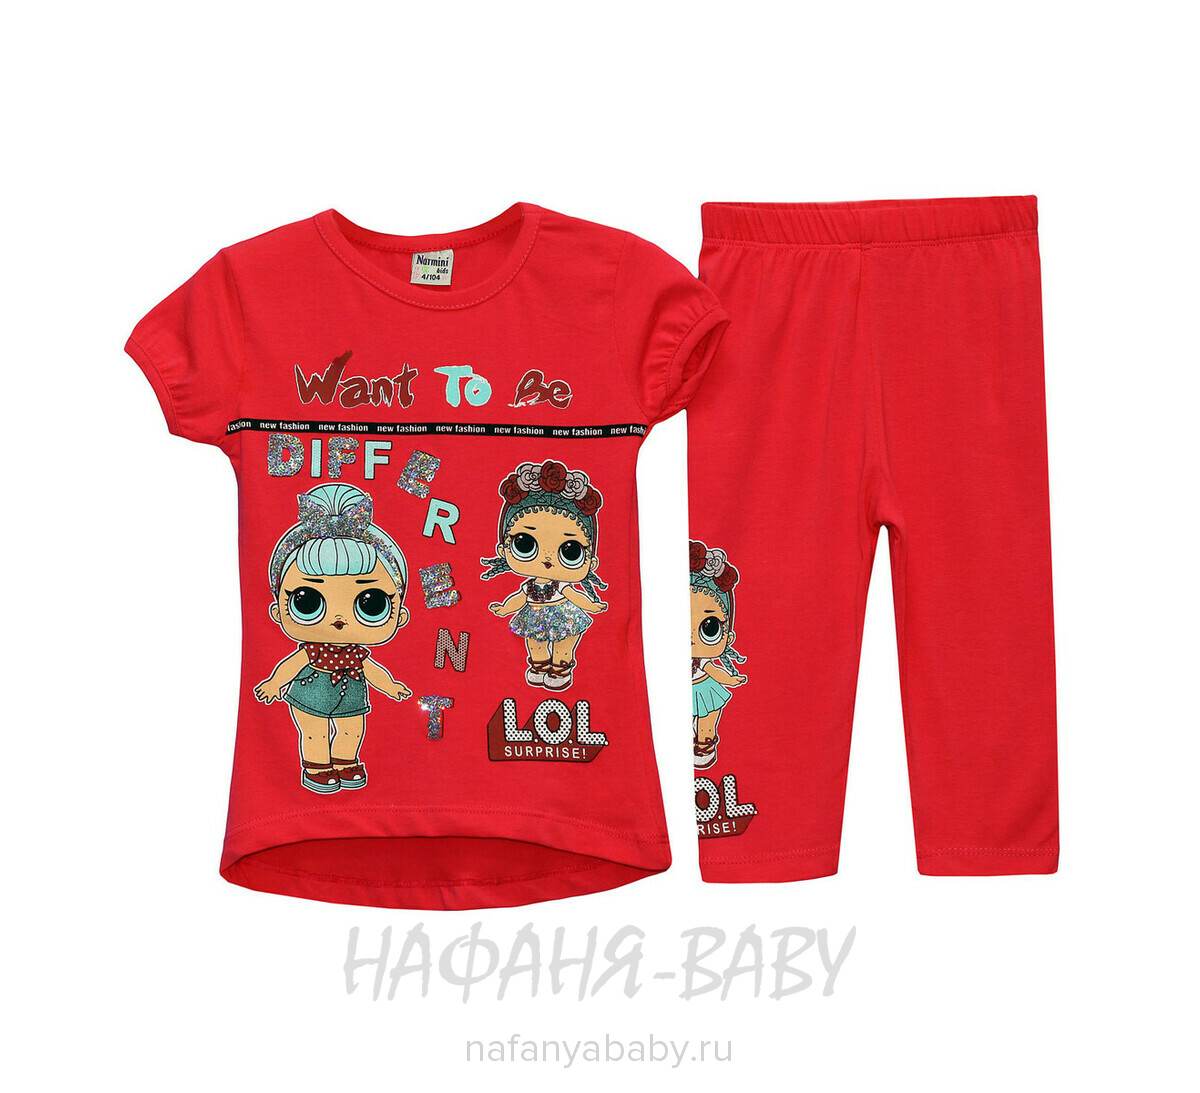 Детский костюм (туника+лосины) NARMINI, купить в интернет магазине Нафаня. арт: 6062.